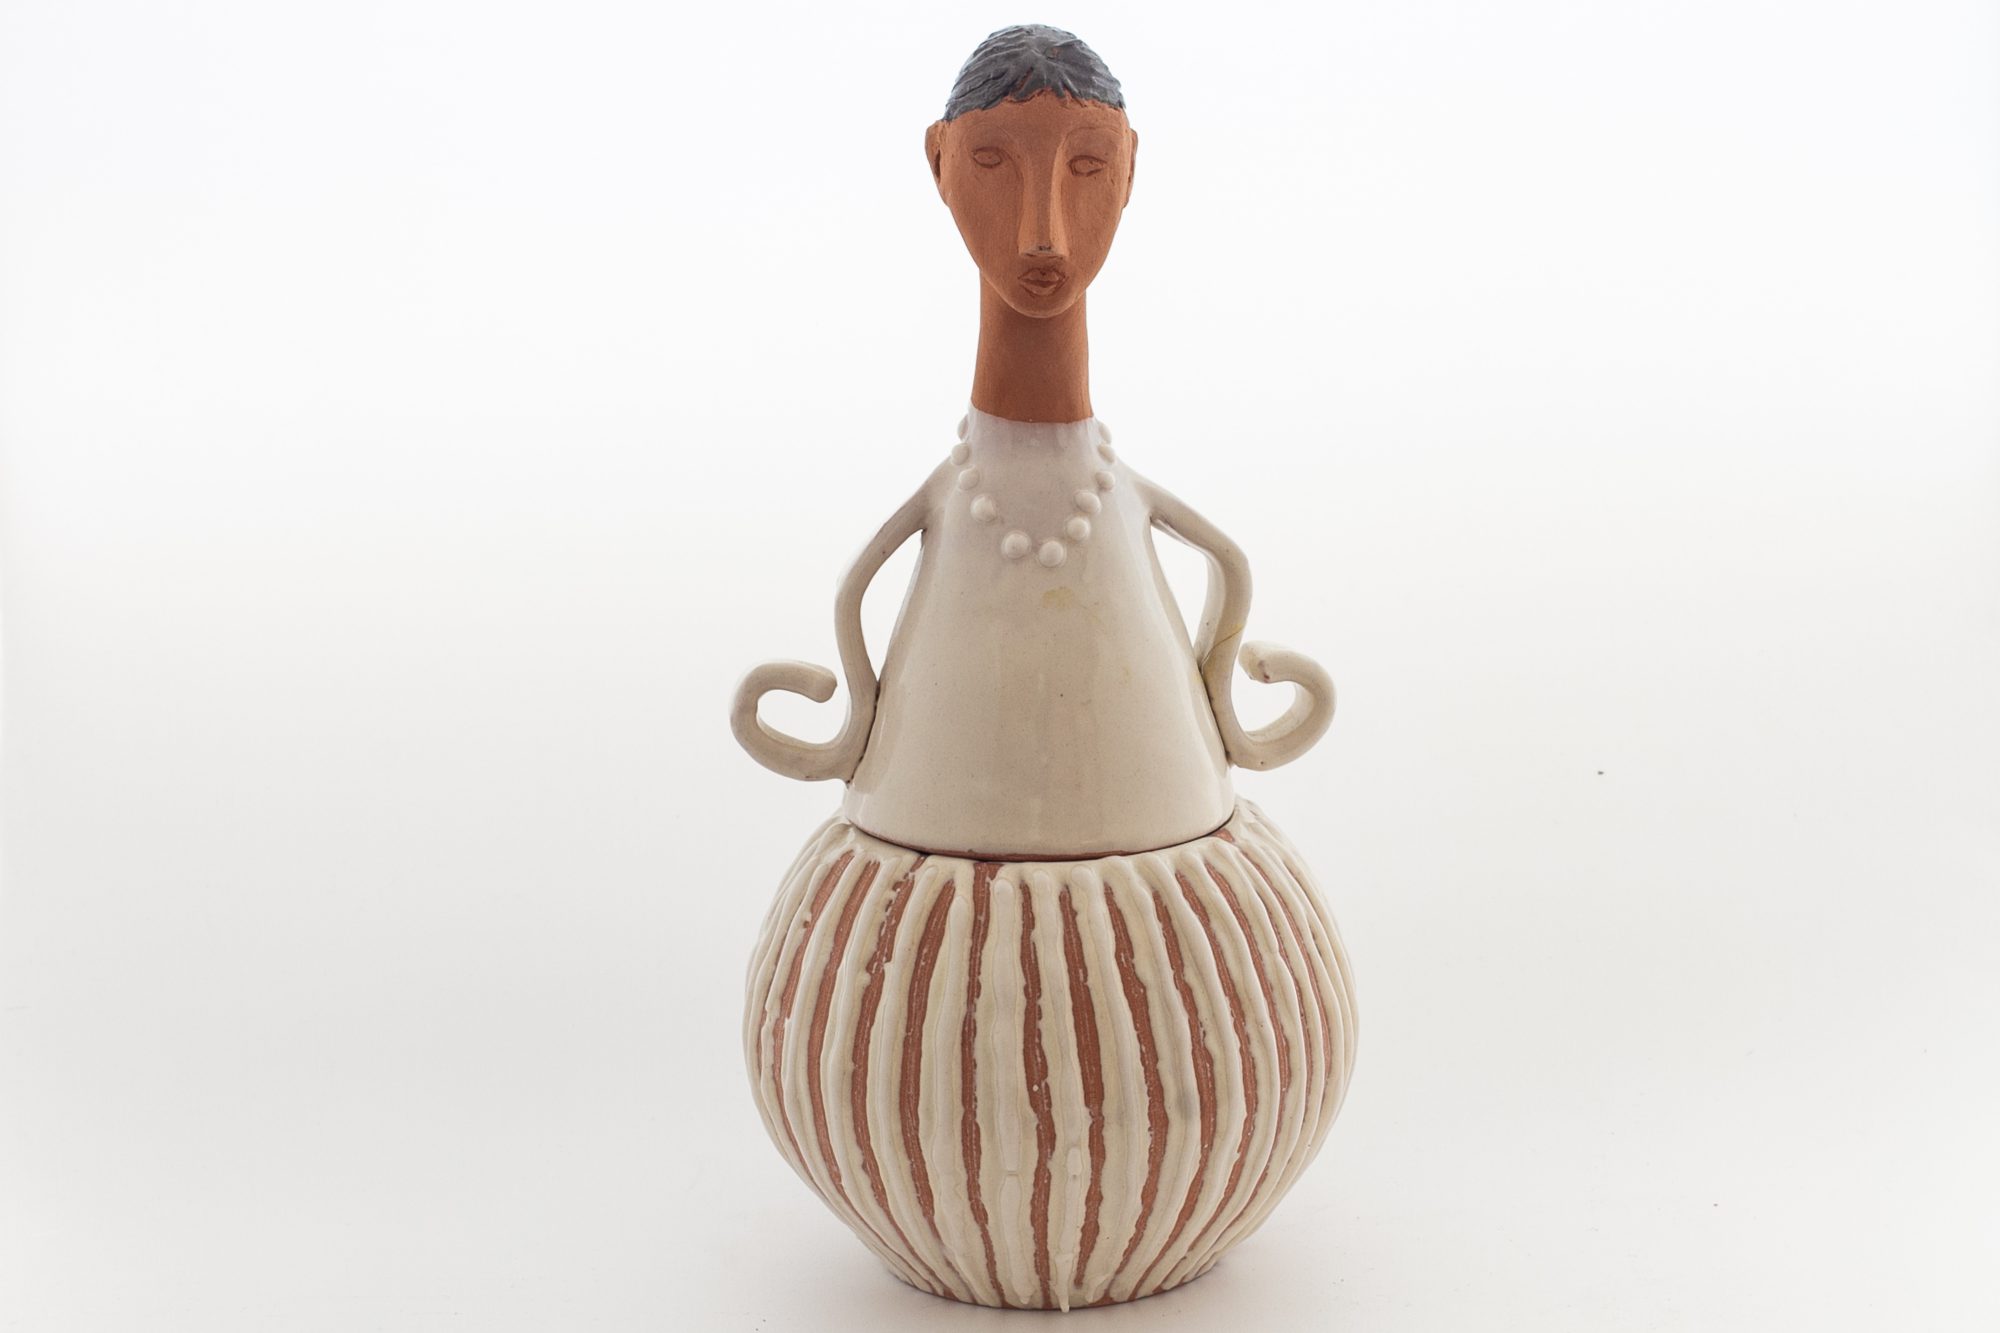 Gioielli e oggetti d’arredo prodotti artigianalmente in ceramica con tecniche raku, ingobbio, maiolica., Home